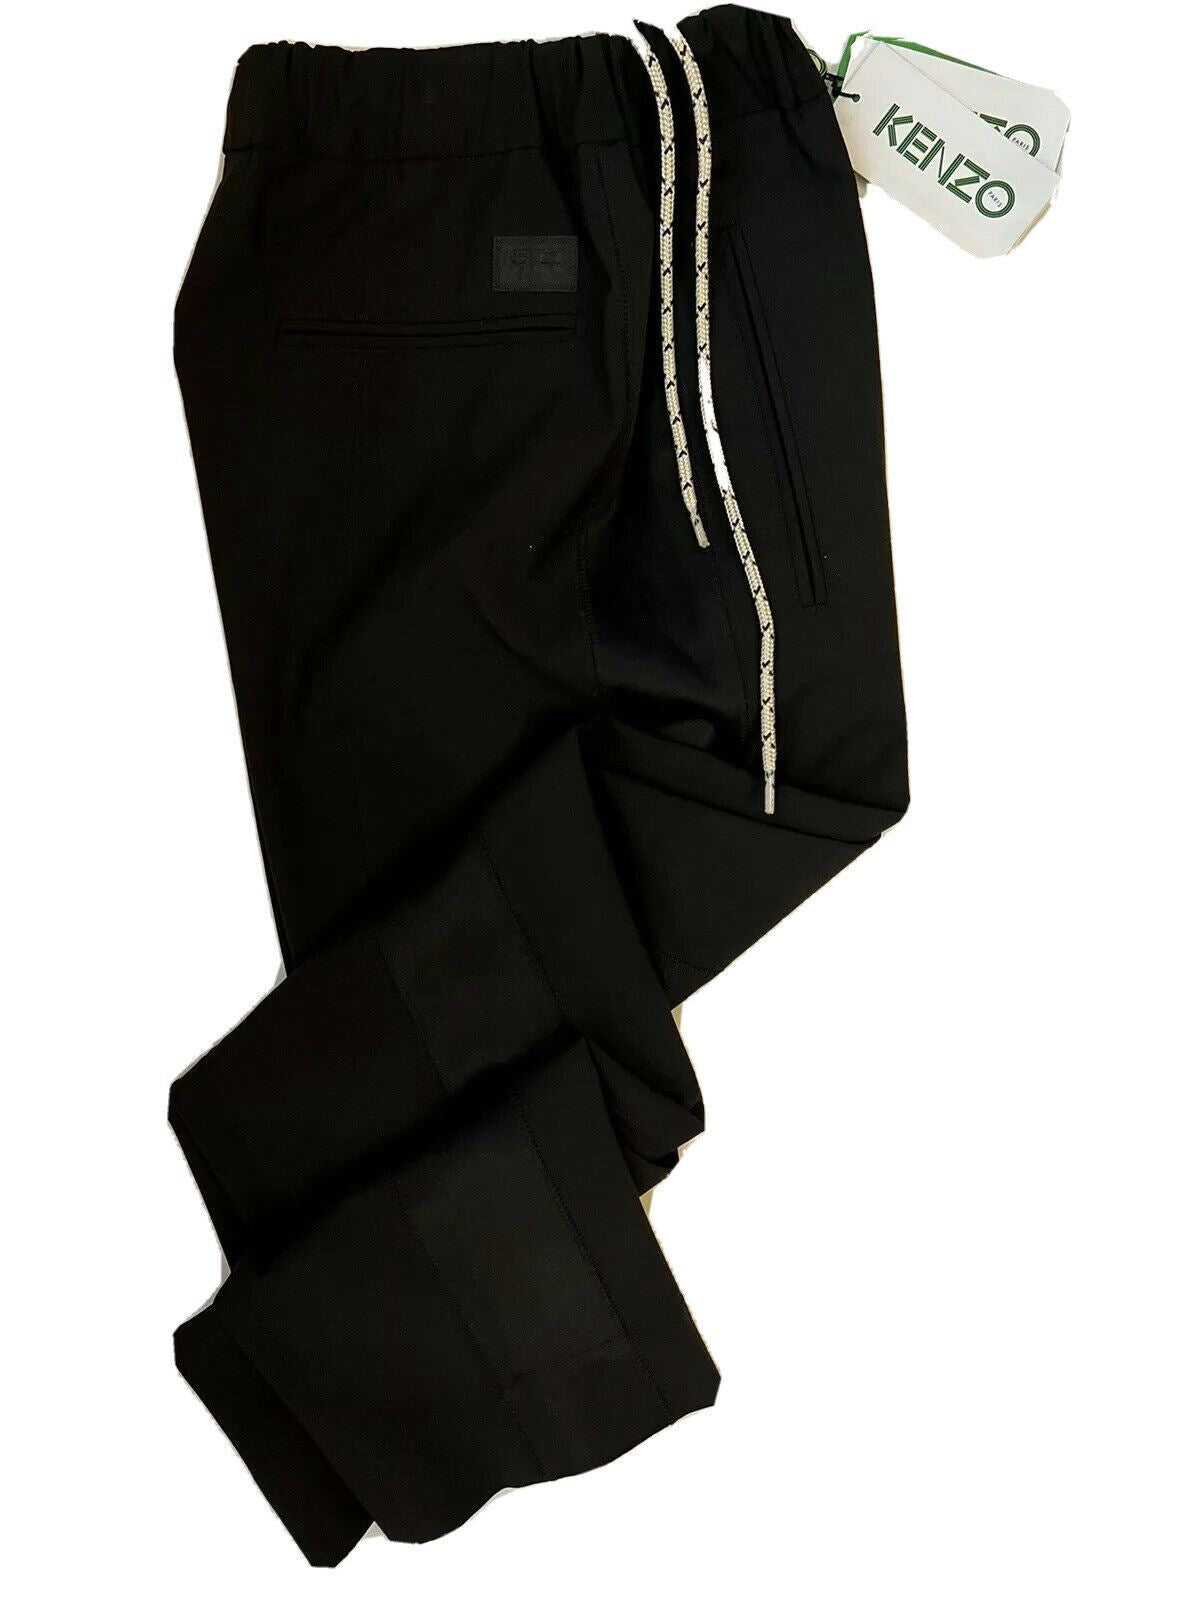 Мужские черные праздничные шерстяные повседневные брюки Kenzo, размер 28, США (44 евро), NWT 370 долларов США